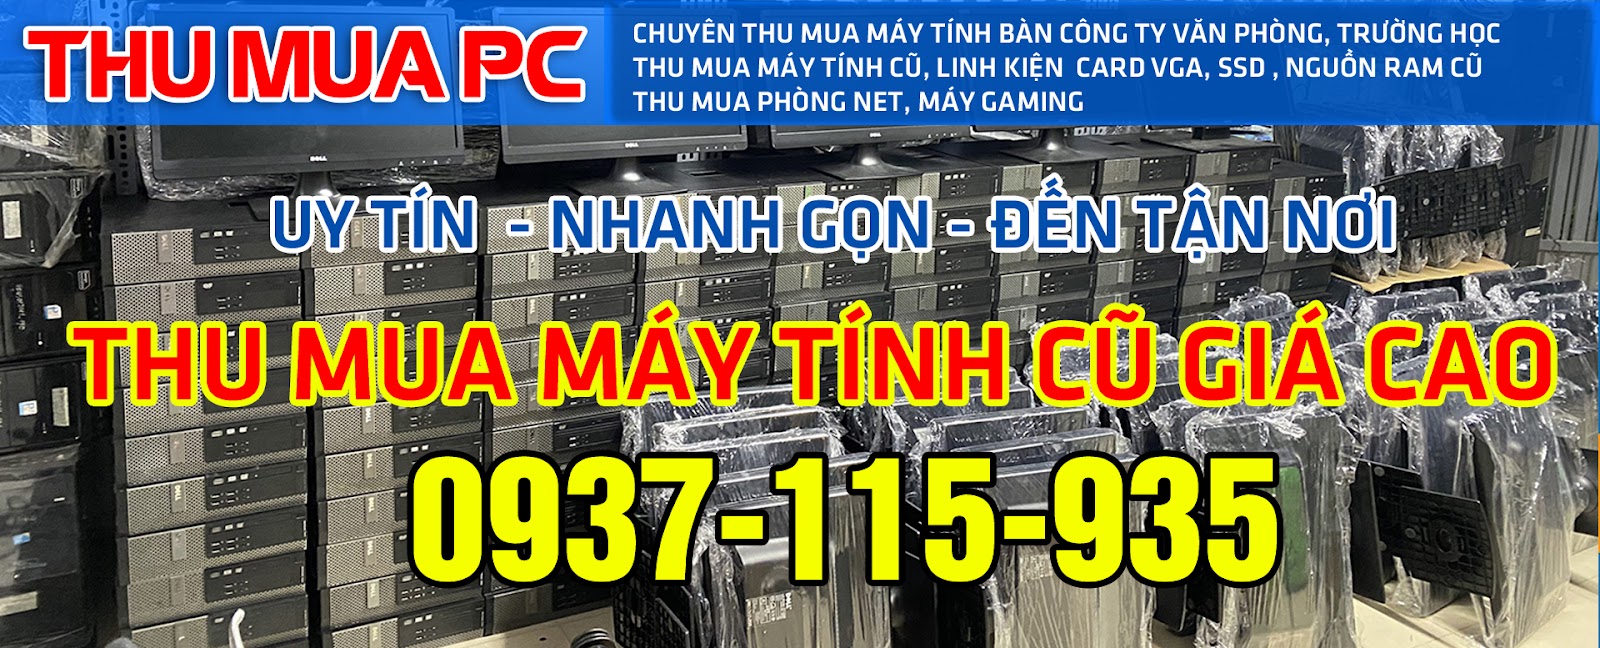 Thu mua máy tính cũ giá cao 0937 115 935, Thanh Lý Phòng NET, Thanh lý máy tính công ty